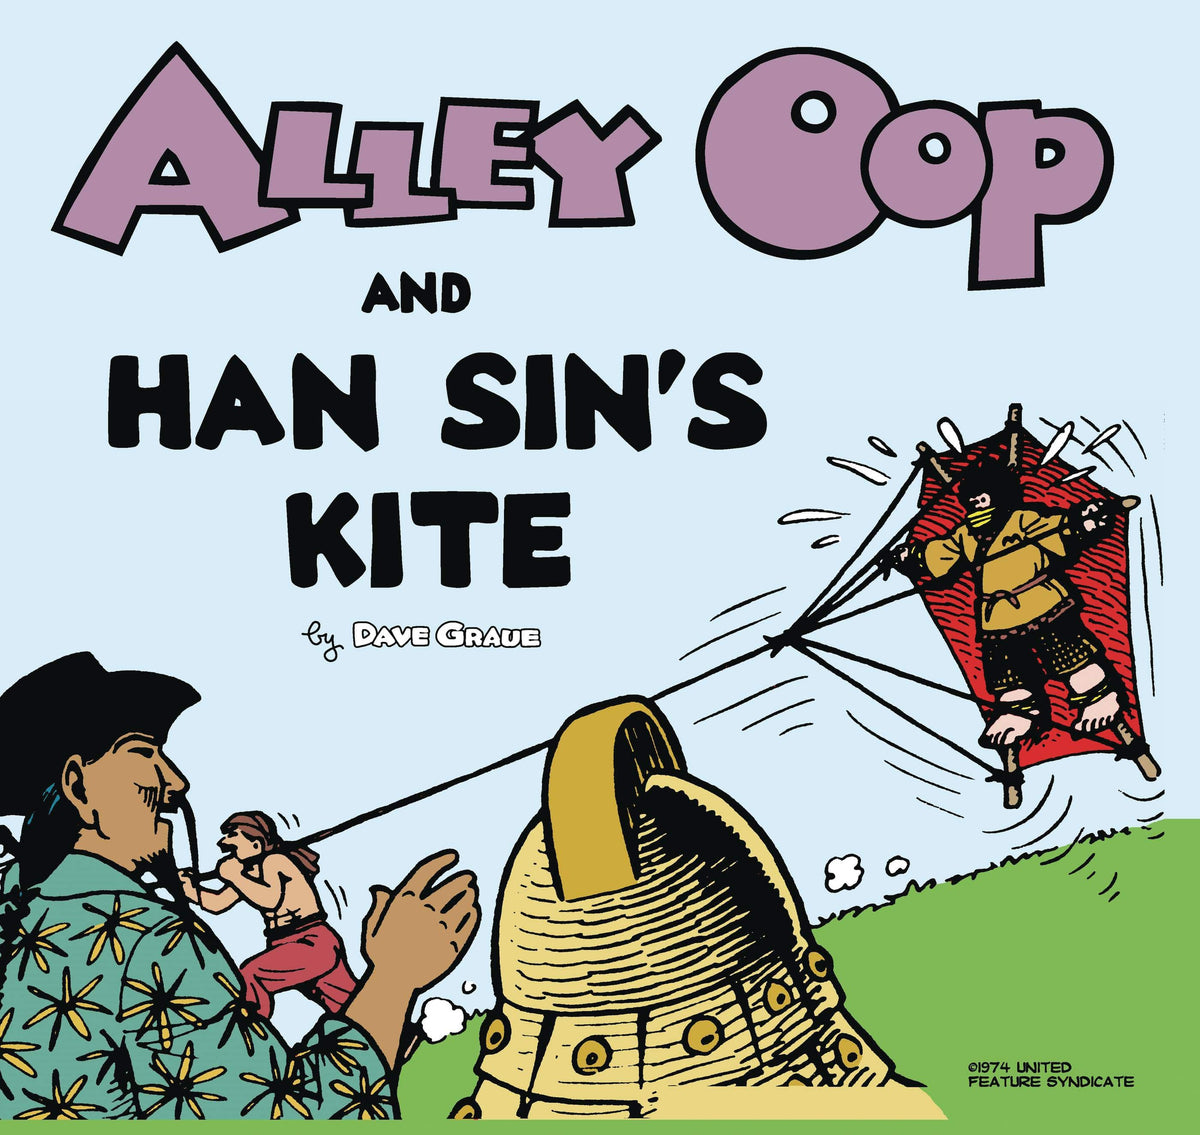 ALLEY OOP AND HAN SINS KITE - Third Eye